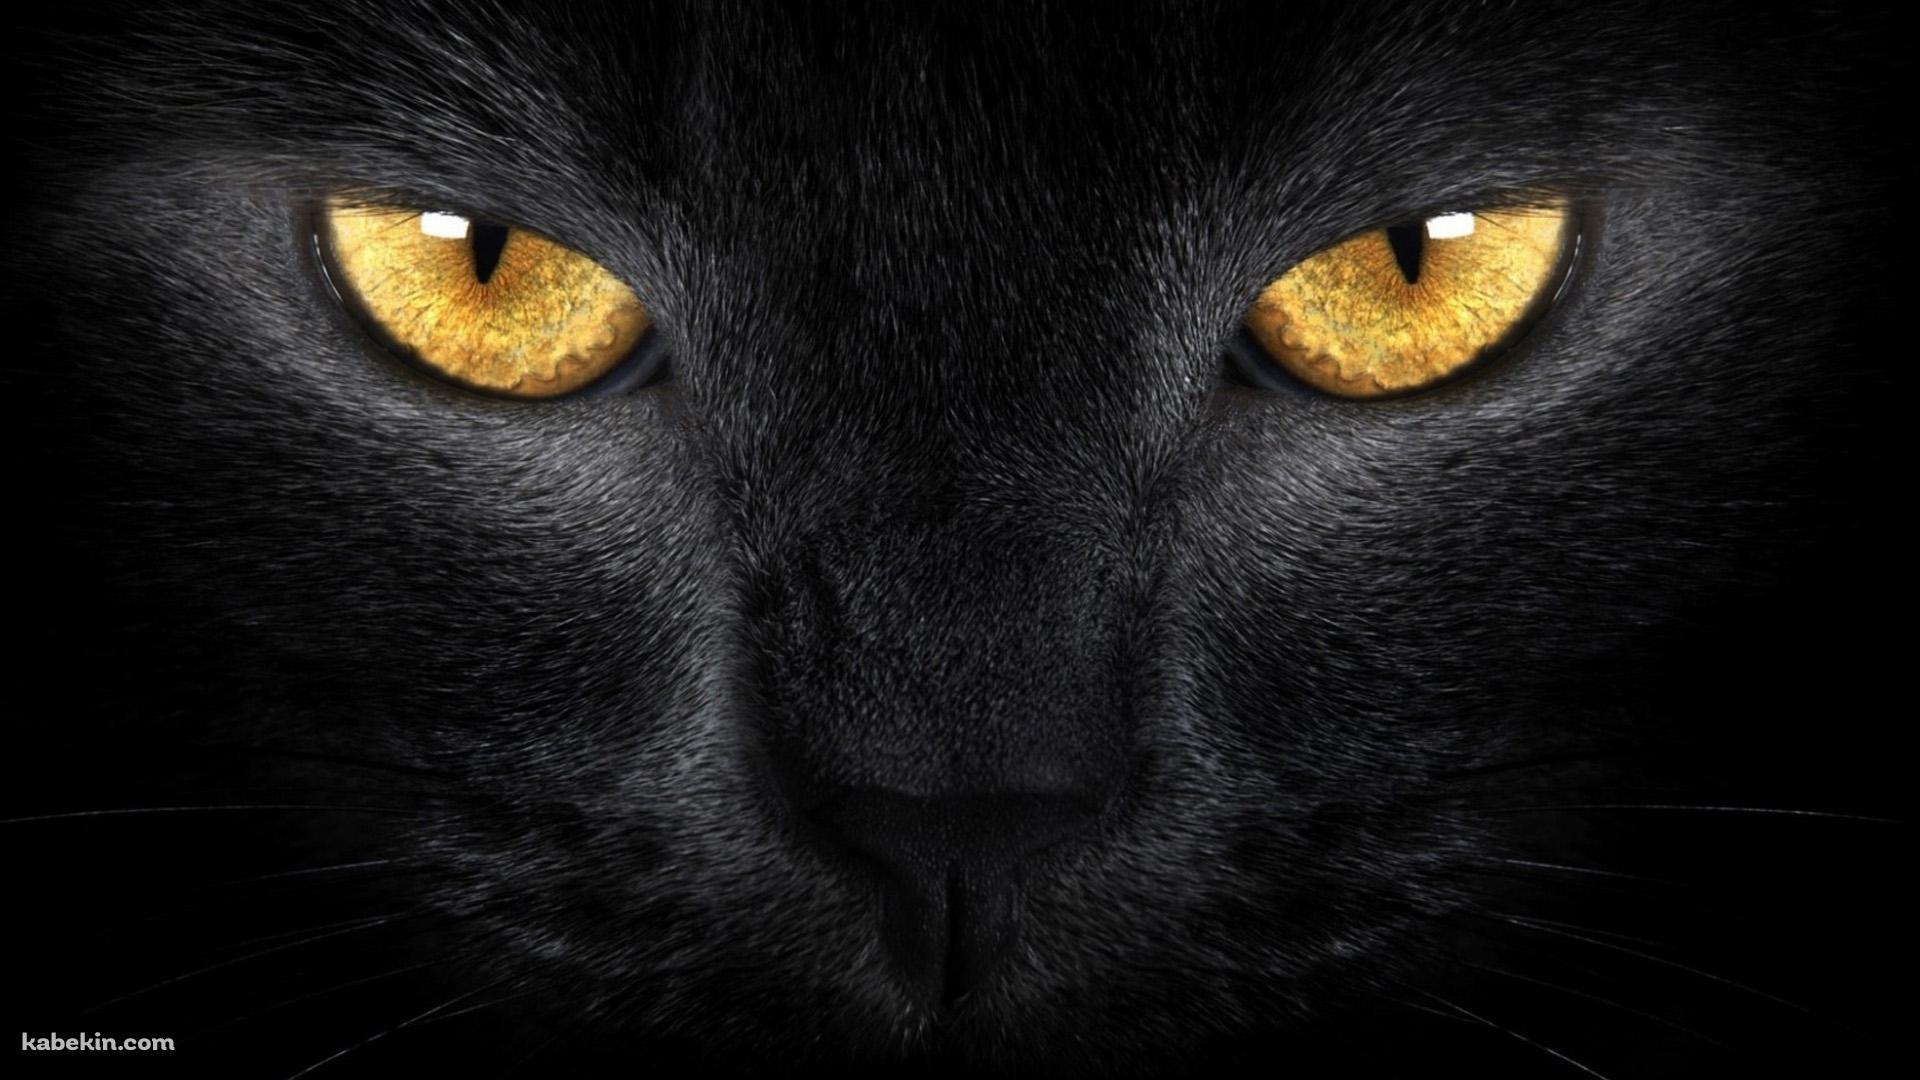 黄色い眼をした黒い猫の壁紙(1920px x 1080px) 高画質 PC・デスクトップ用